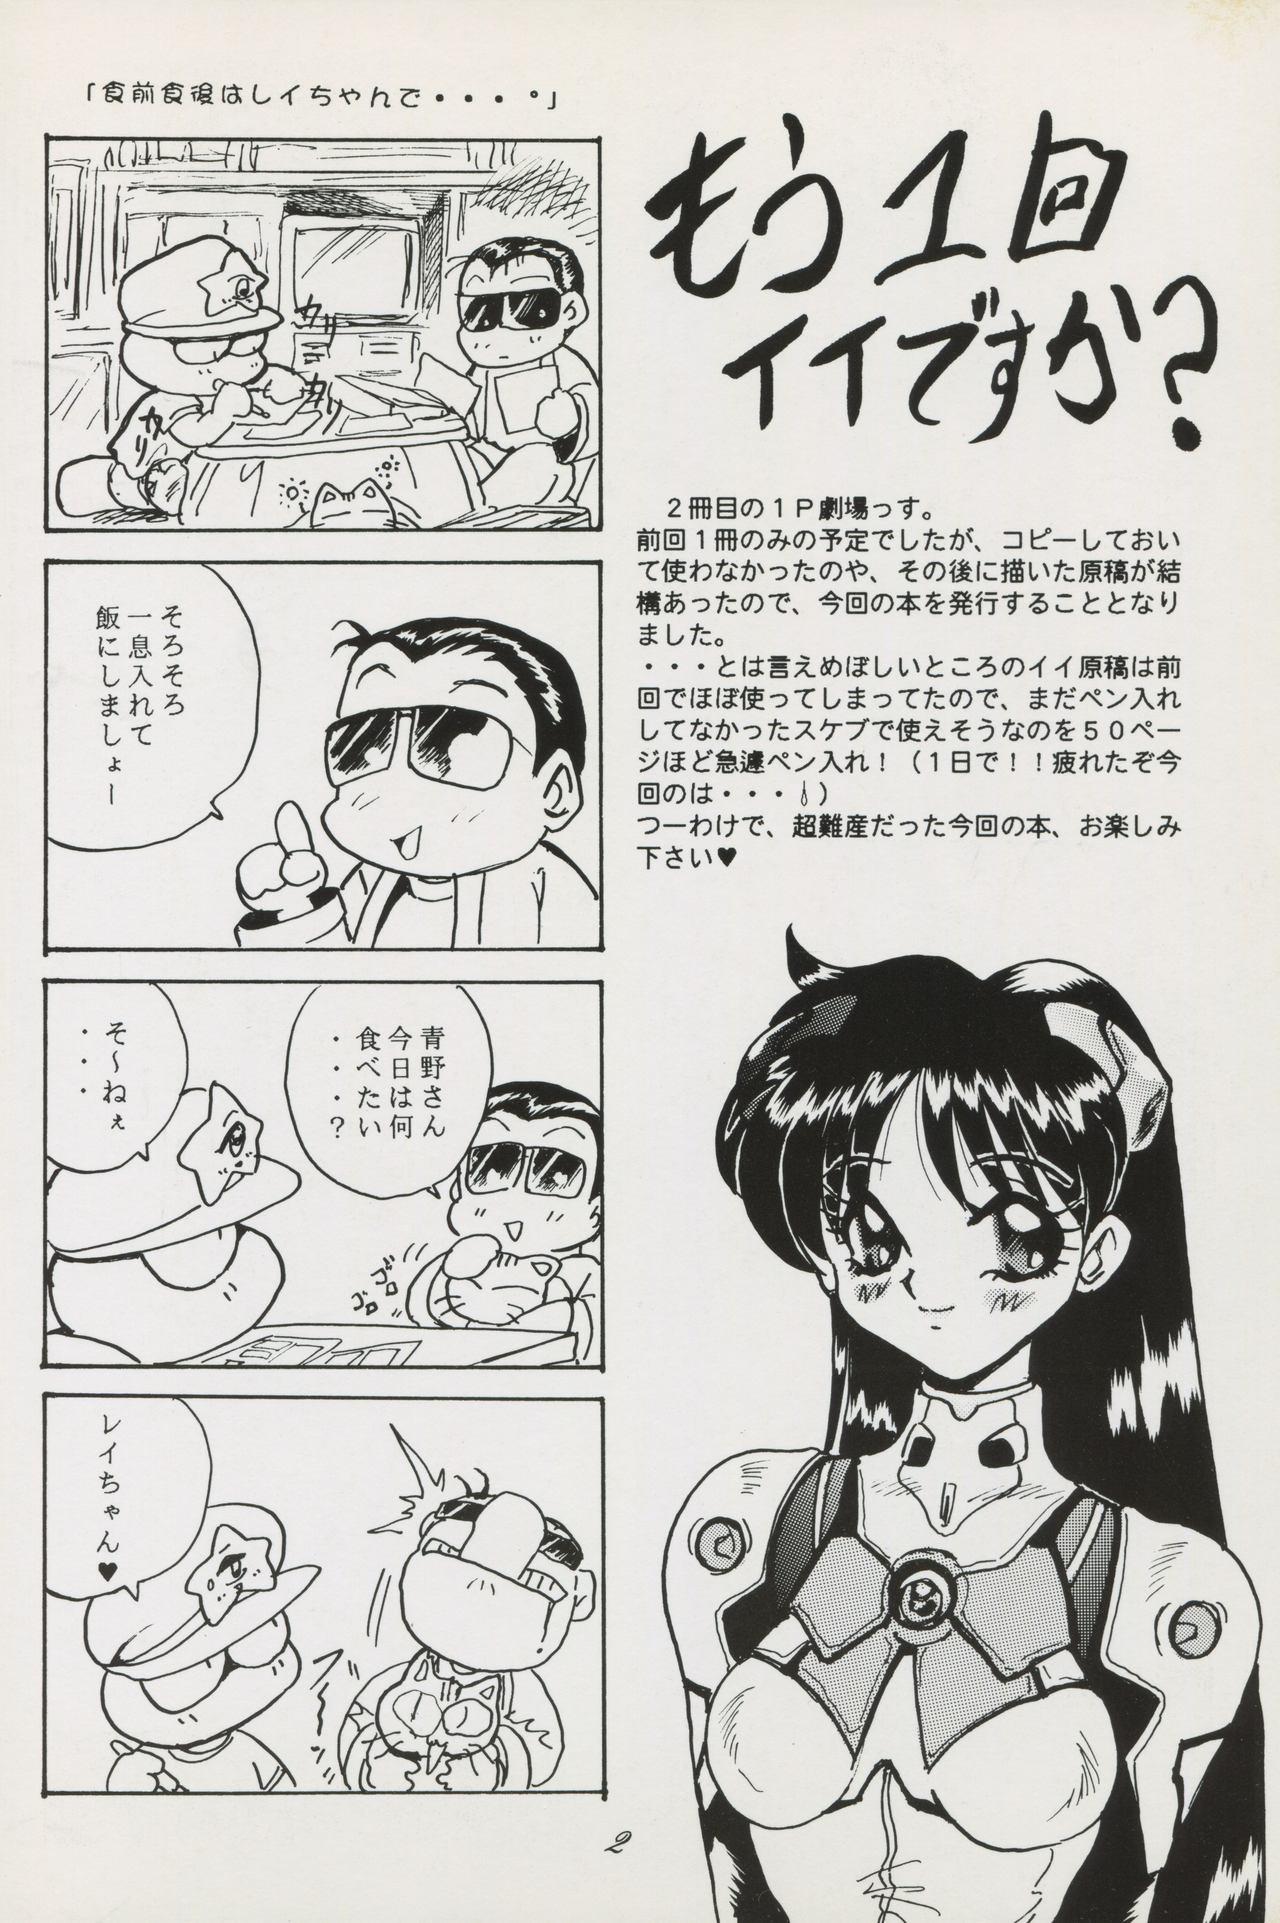 Amateur Blowjob Sailor Moon 1 Page Gekijou P2 - SAILOR MOON ONE PAGE THEATER II - Sailor moon Girls Getting Fucked - Page 2